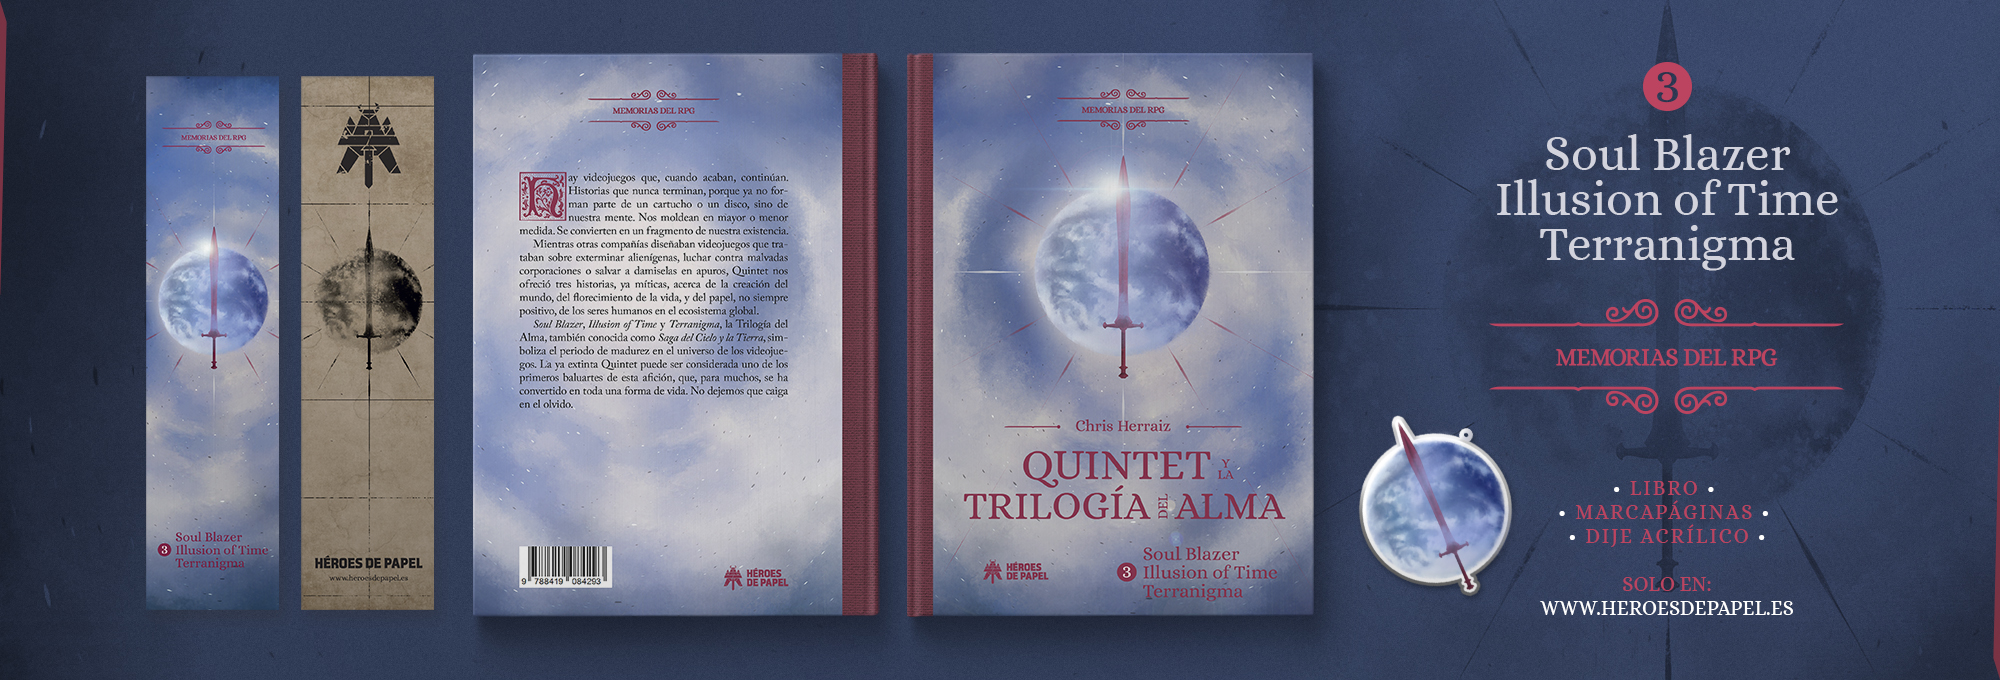 Quintet y la Trilogía del Alma Memorias del RPG: Soul Blazer - Illusion of Time - Terranigma